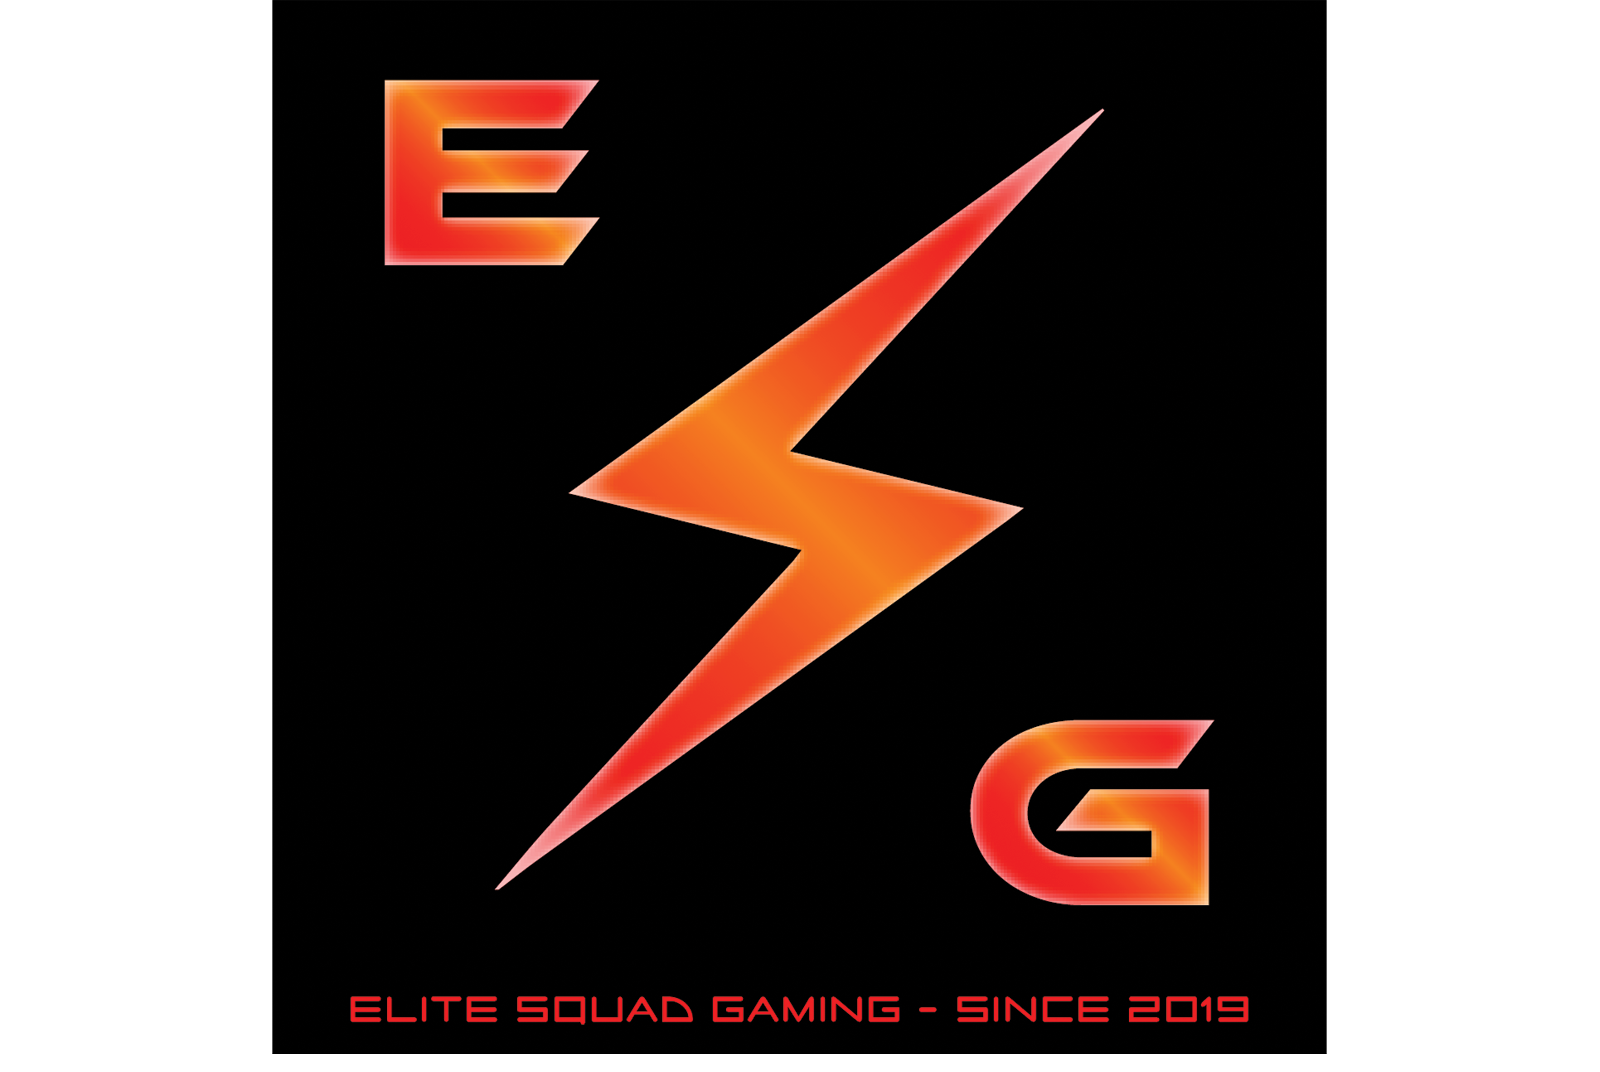 Elite squad gaming